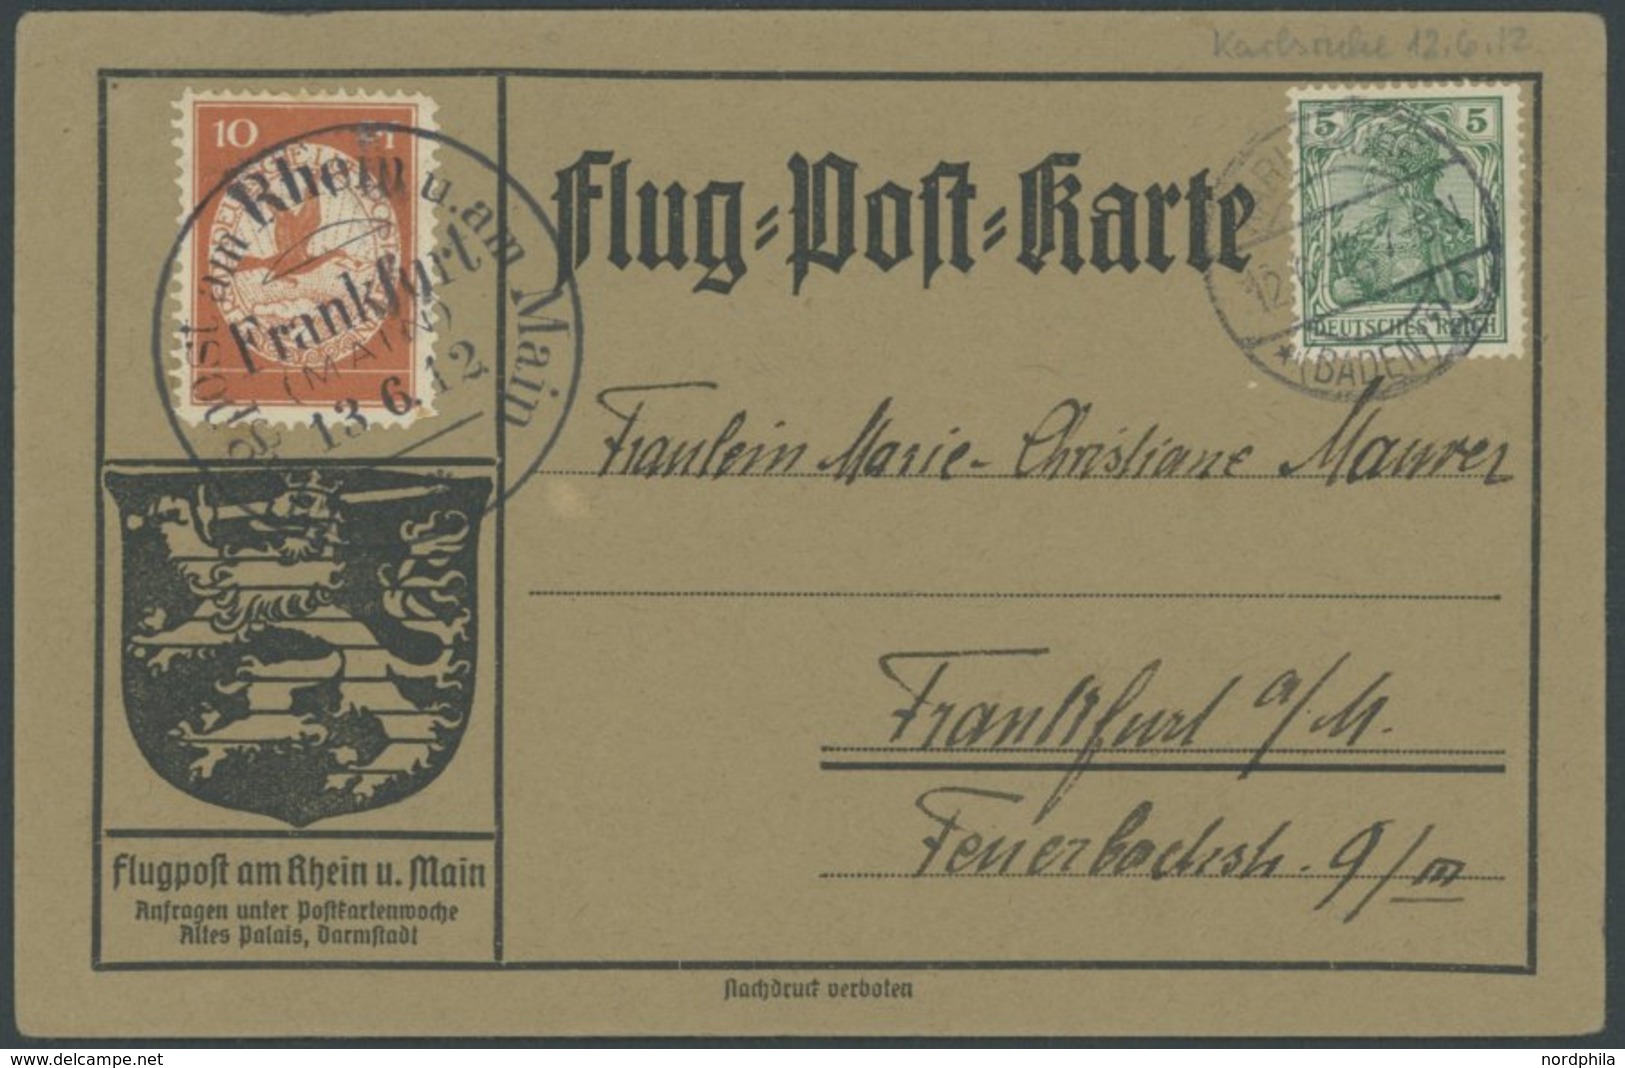 ZEPPELINPOST 10 BRIEF, 1912, 10 Pf. Flp. Am Rhein Und Main Auf Flugpostkarte Mit 5 Pf. Zusatzfrankatur, Sonderstempel Fr - Poste Aérienne & Zeppelin